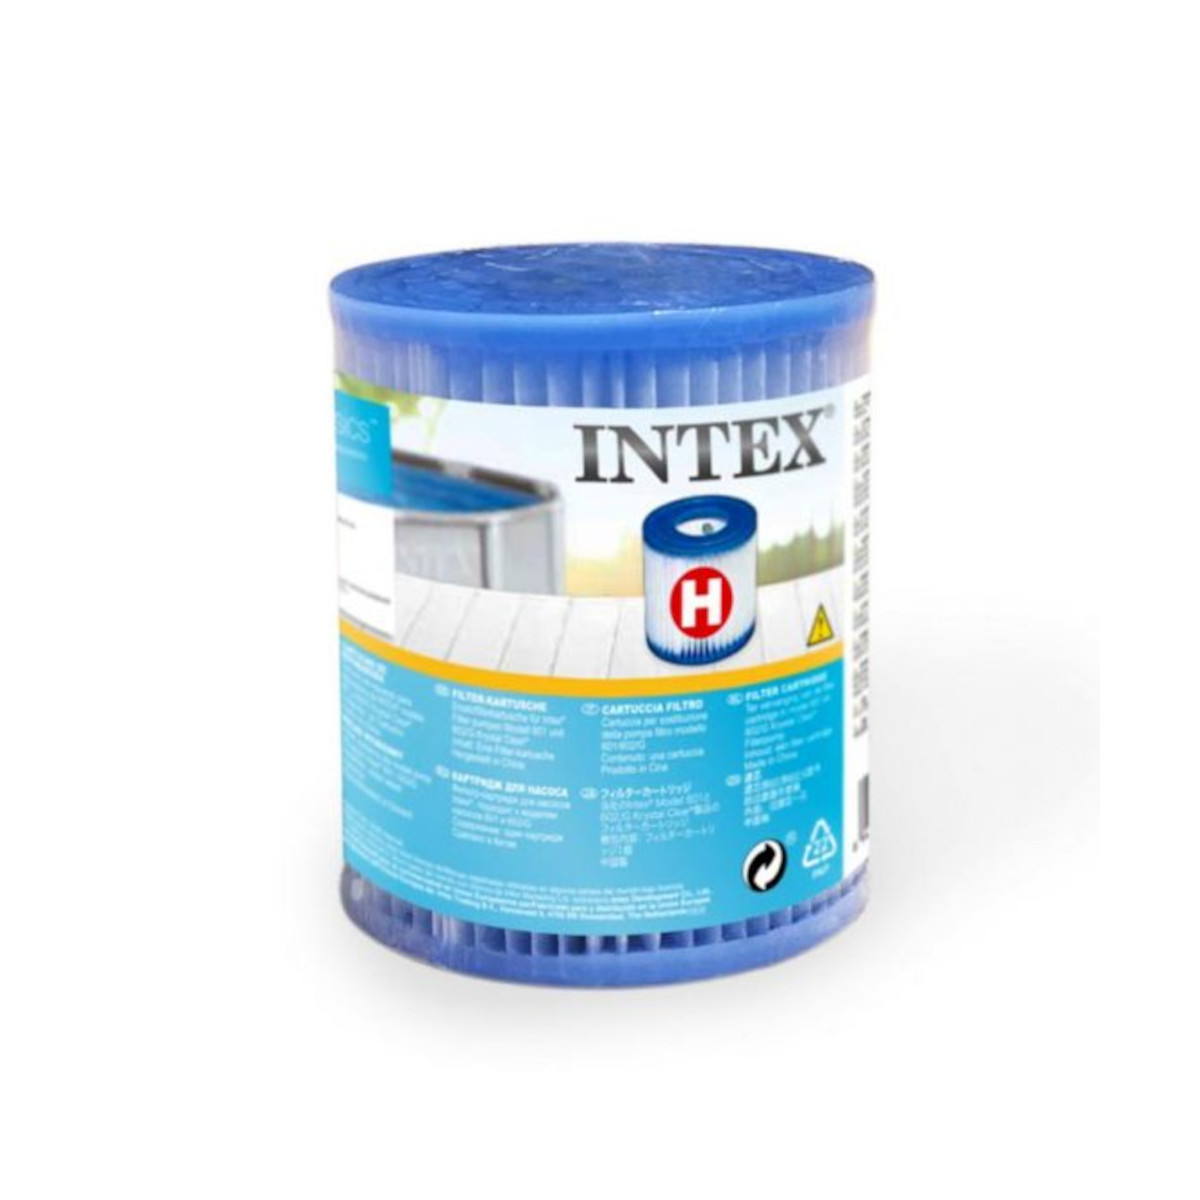 INTEX Filterkartusche, Typ H, weiß #28602 für Pumpen